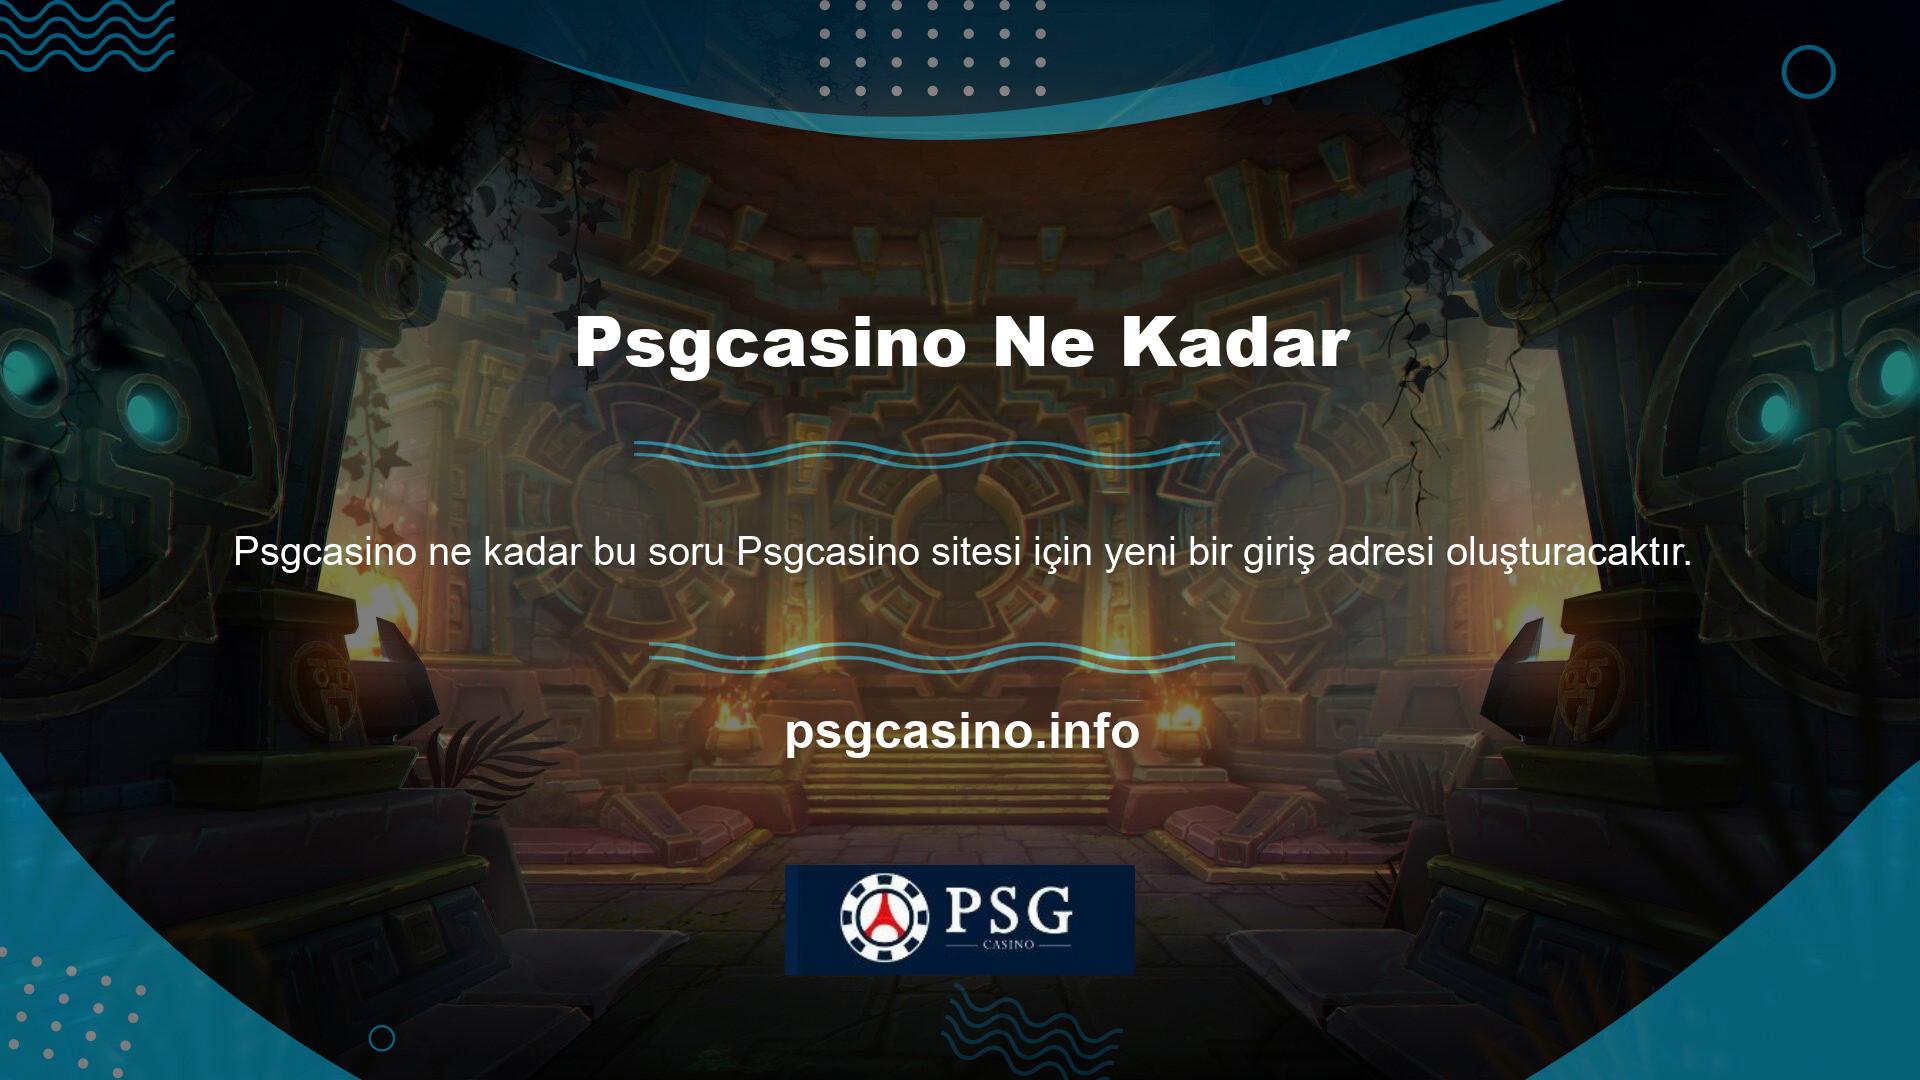 Bilindiği üzere Psgcasino markası Türkiye'de yabancı casino sitesi olarak faaliyetine devam etmektedir